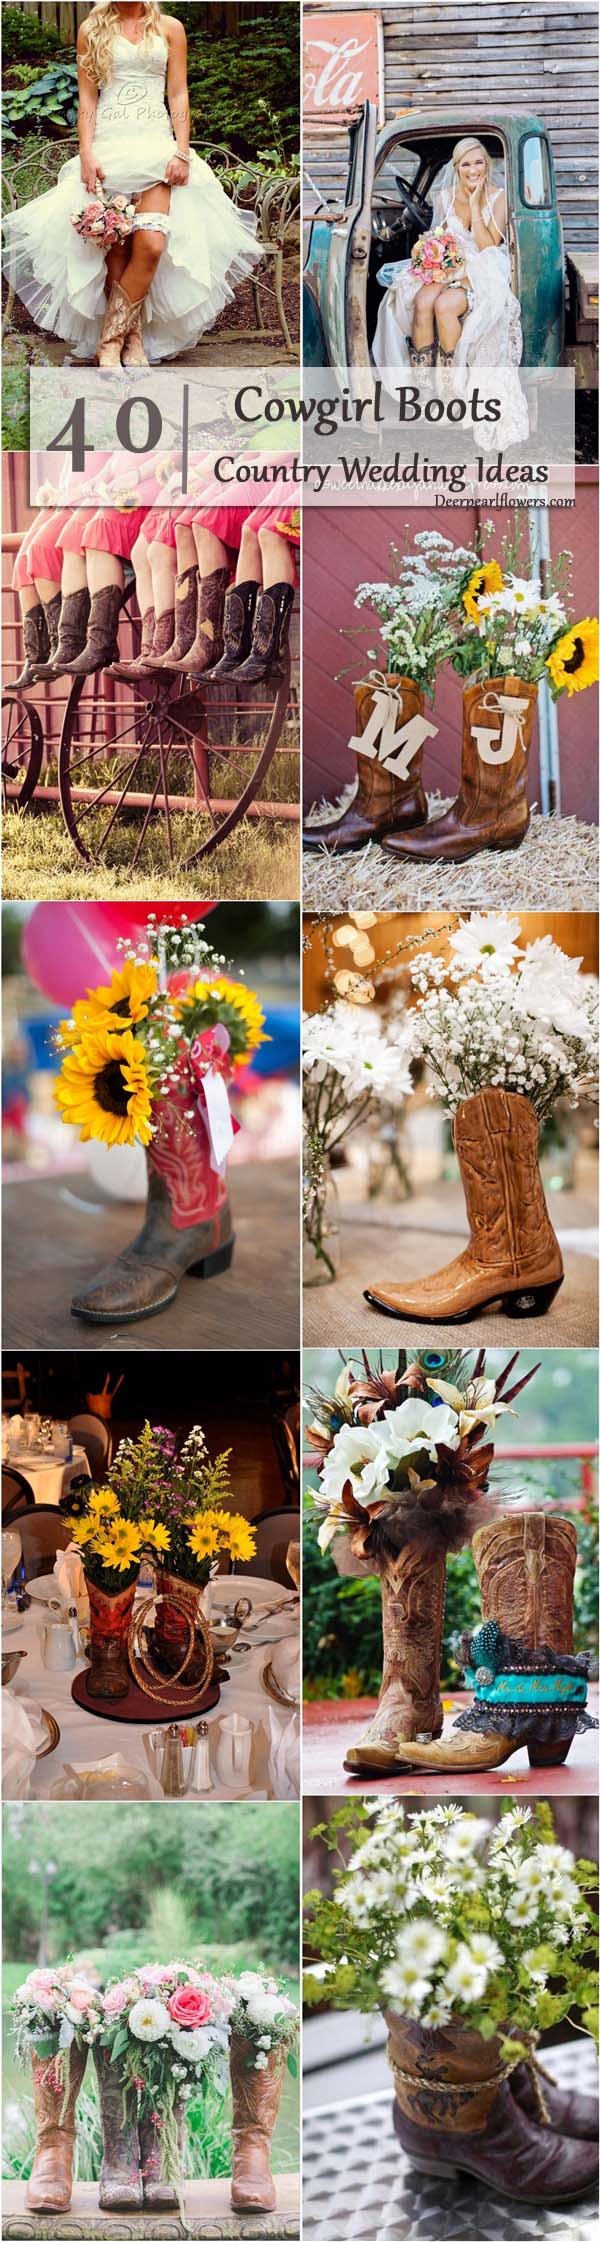 rustic country cowboy cowgirl wedding ideas